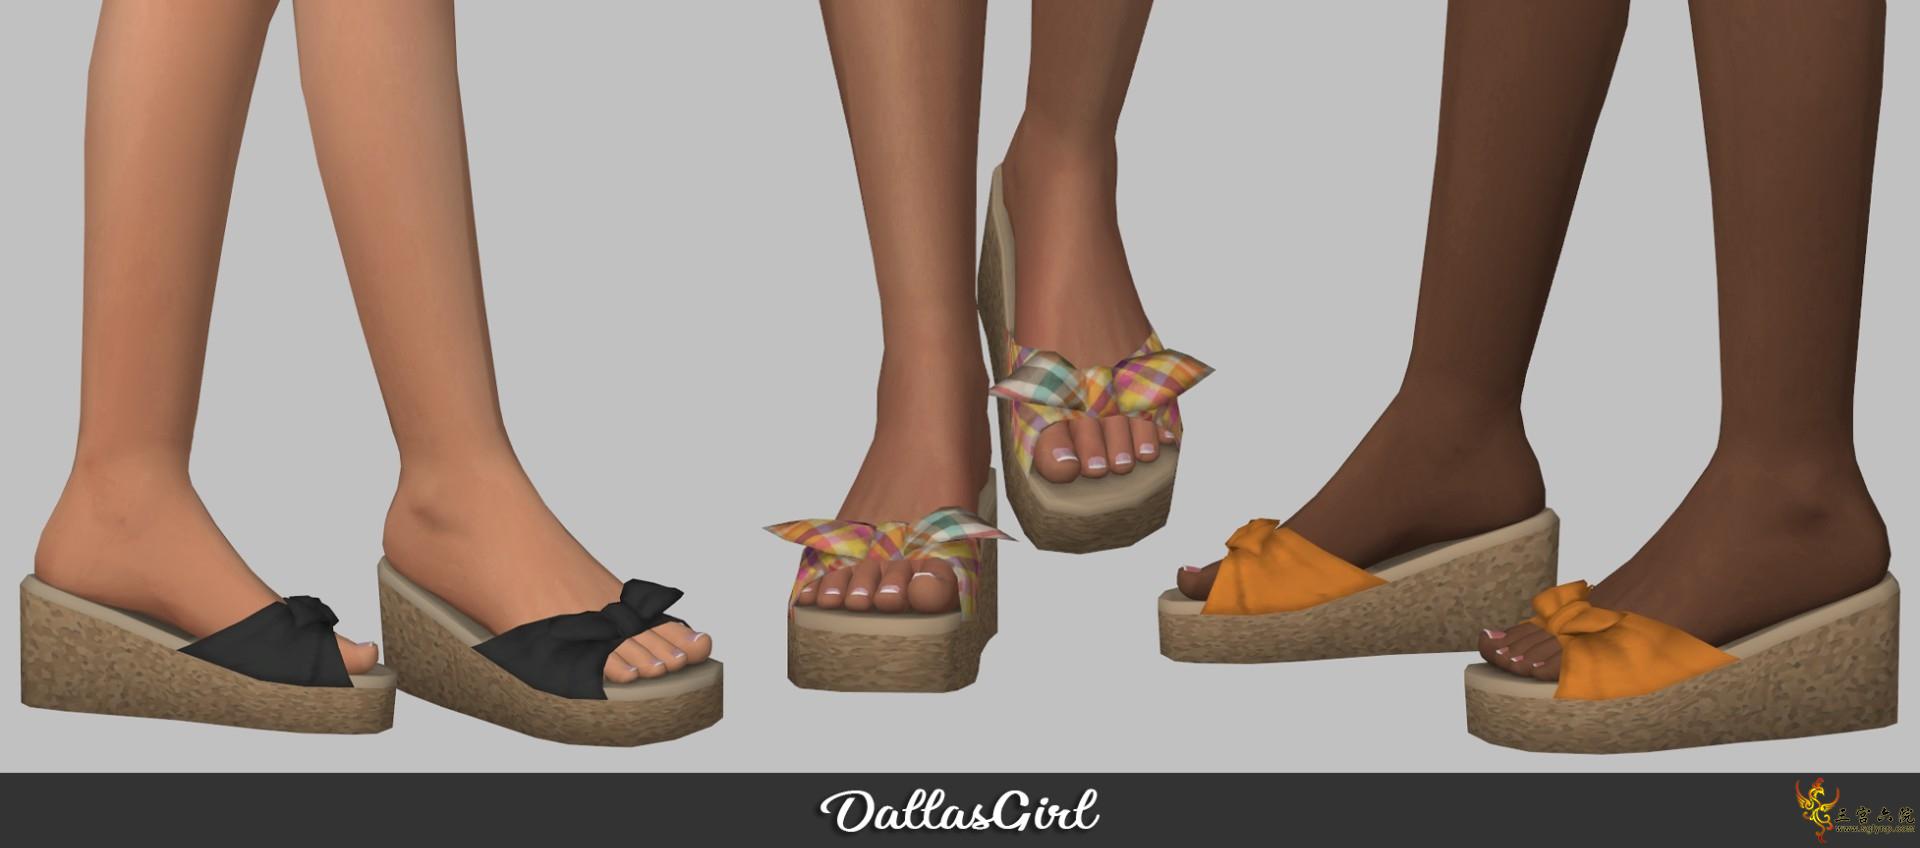 DG EA Summer Sandals mashup.png